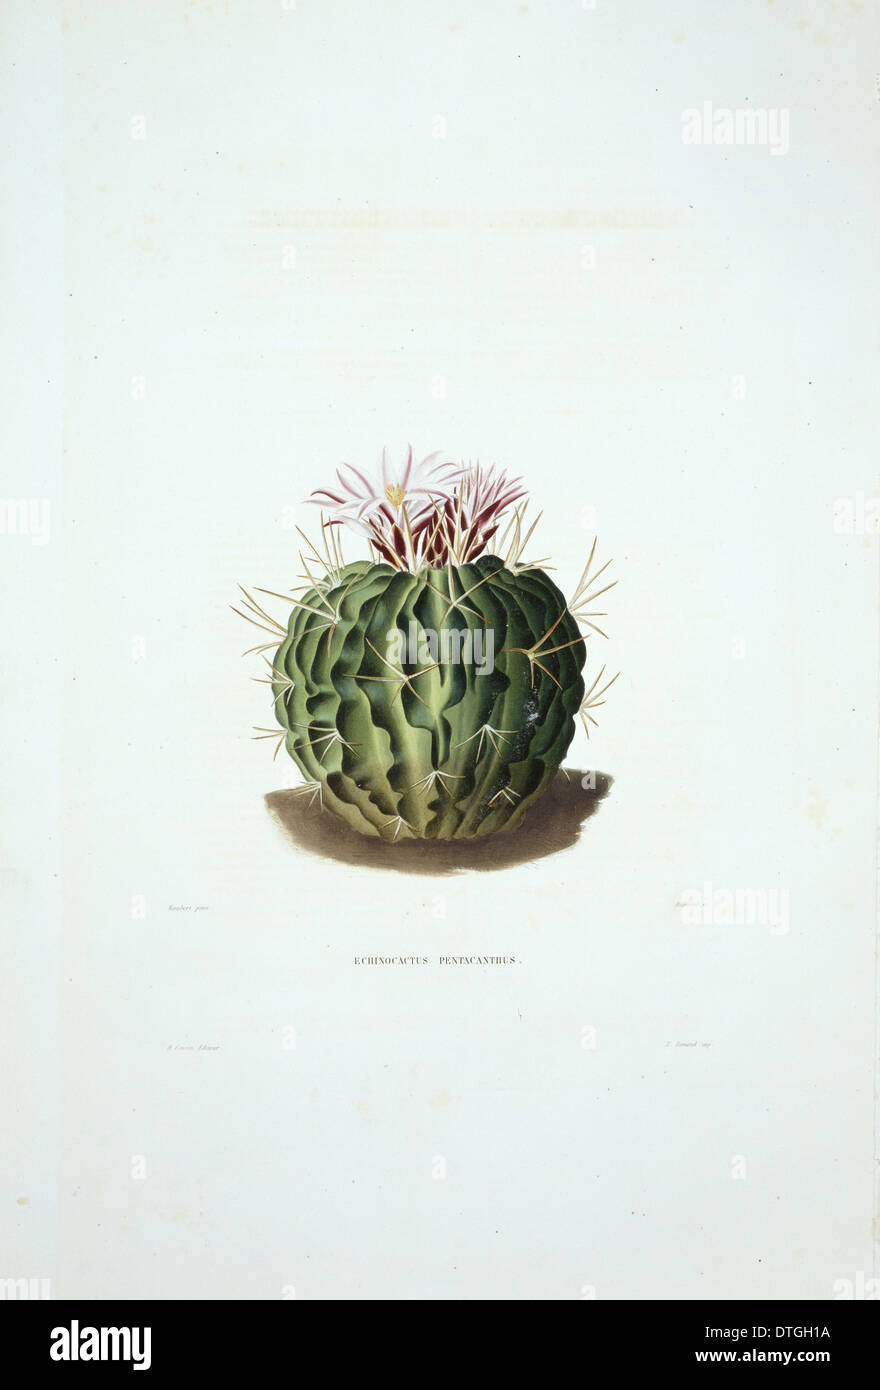 Echinocactus pentacanthus, cactus Stock Photo